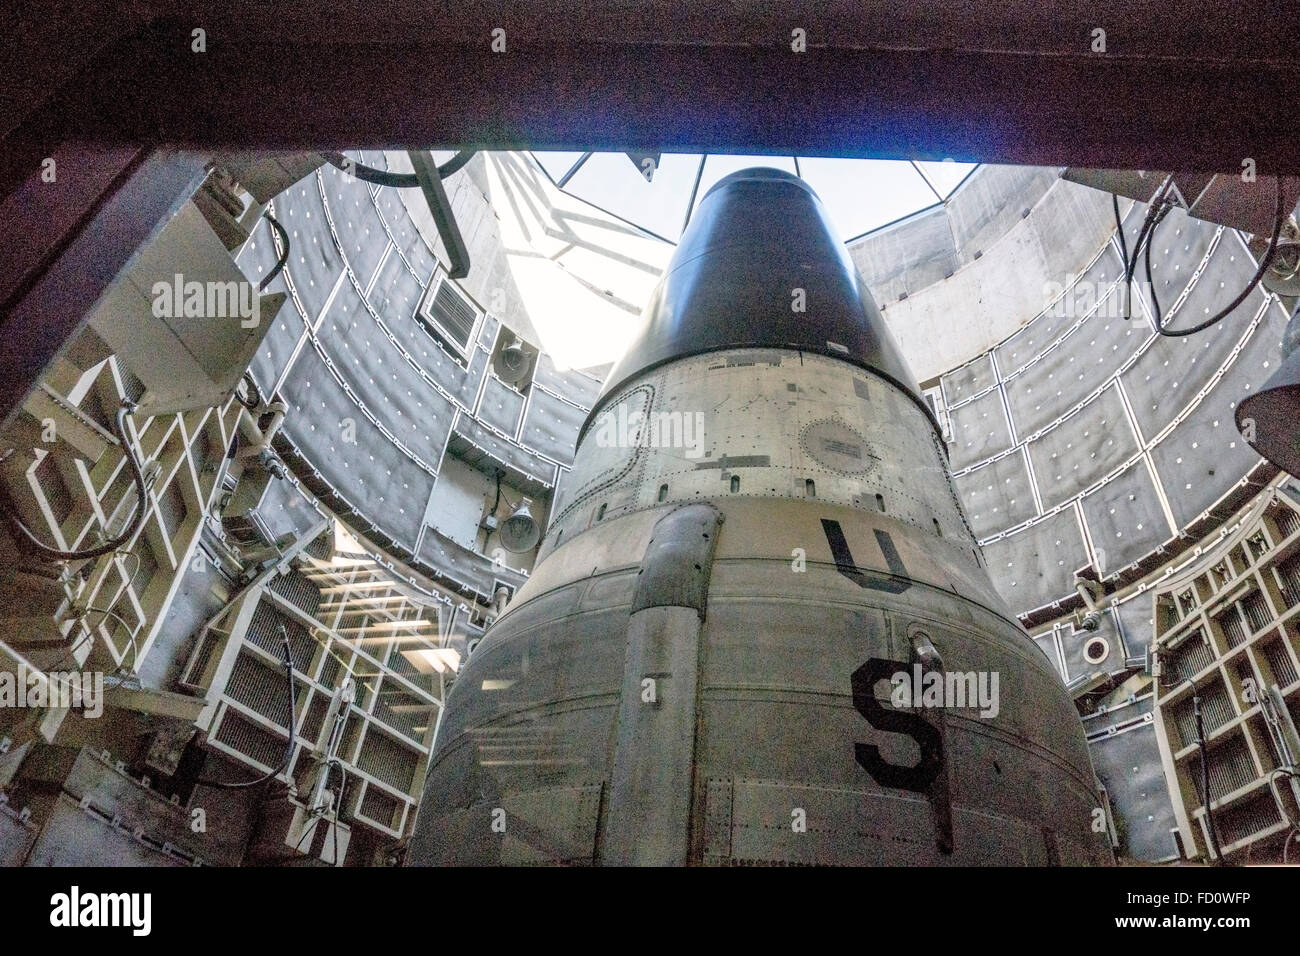 Vue à travers la vitre menaçant montrant des personnes handicapées de cône de missile Titan II en position de lancement en silo cylindrique double paroi Banque D'Images